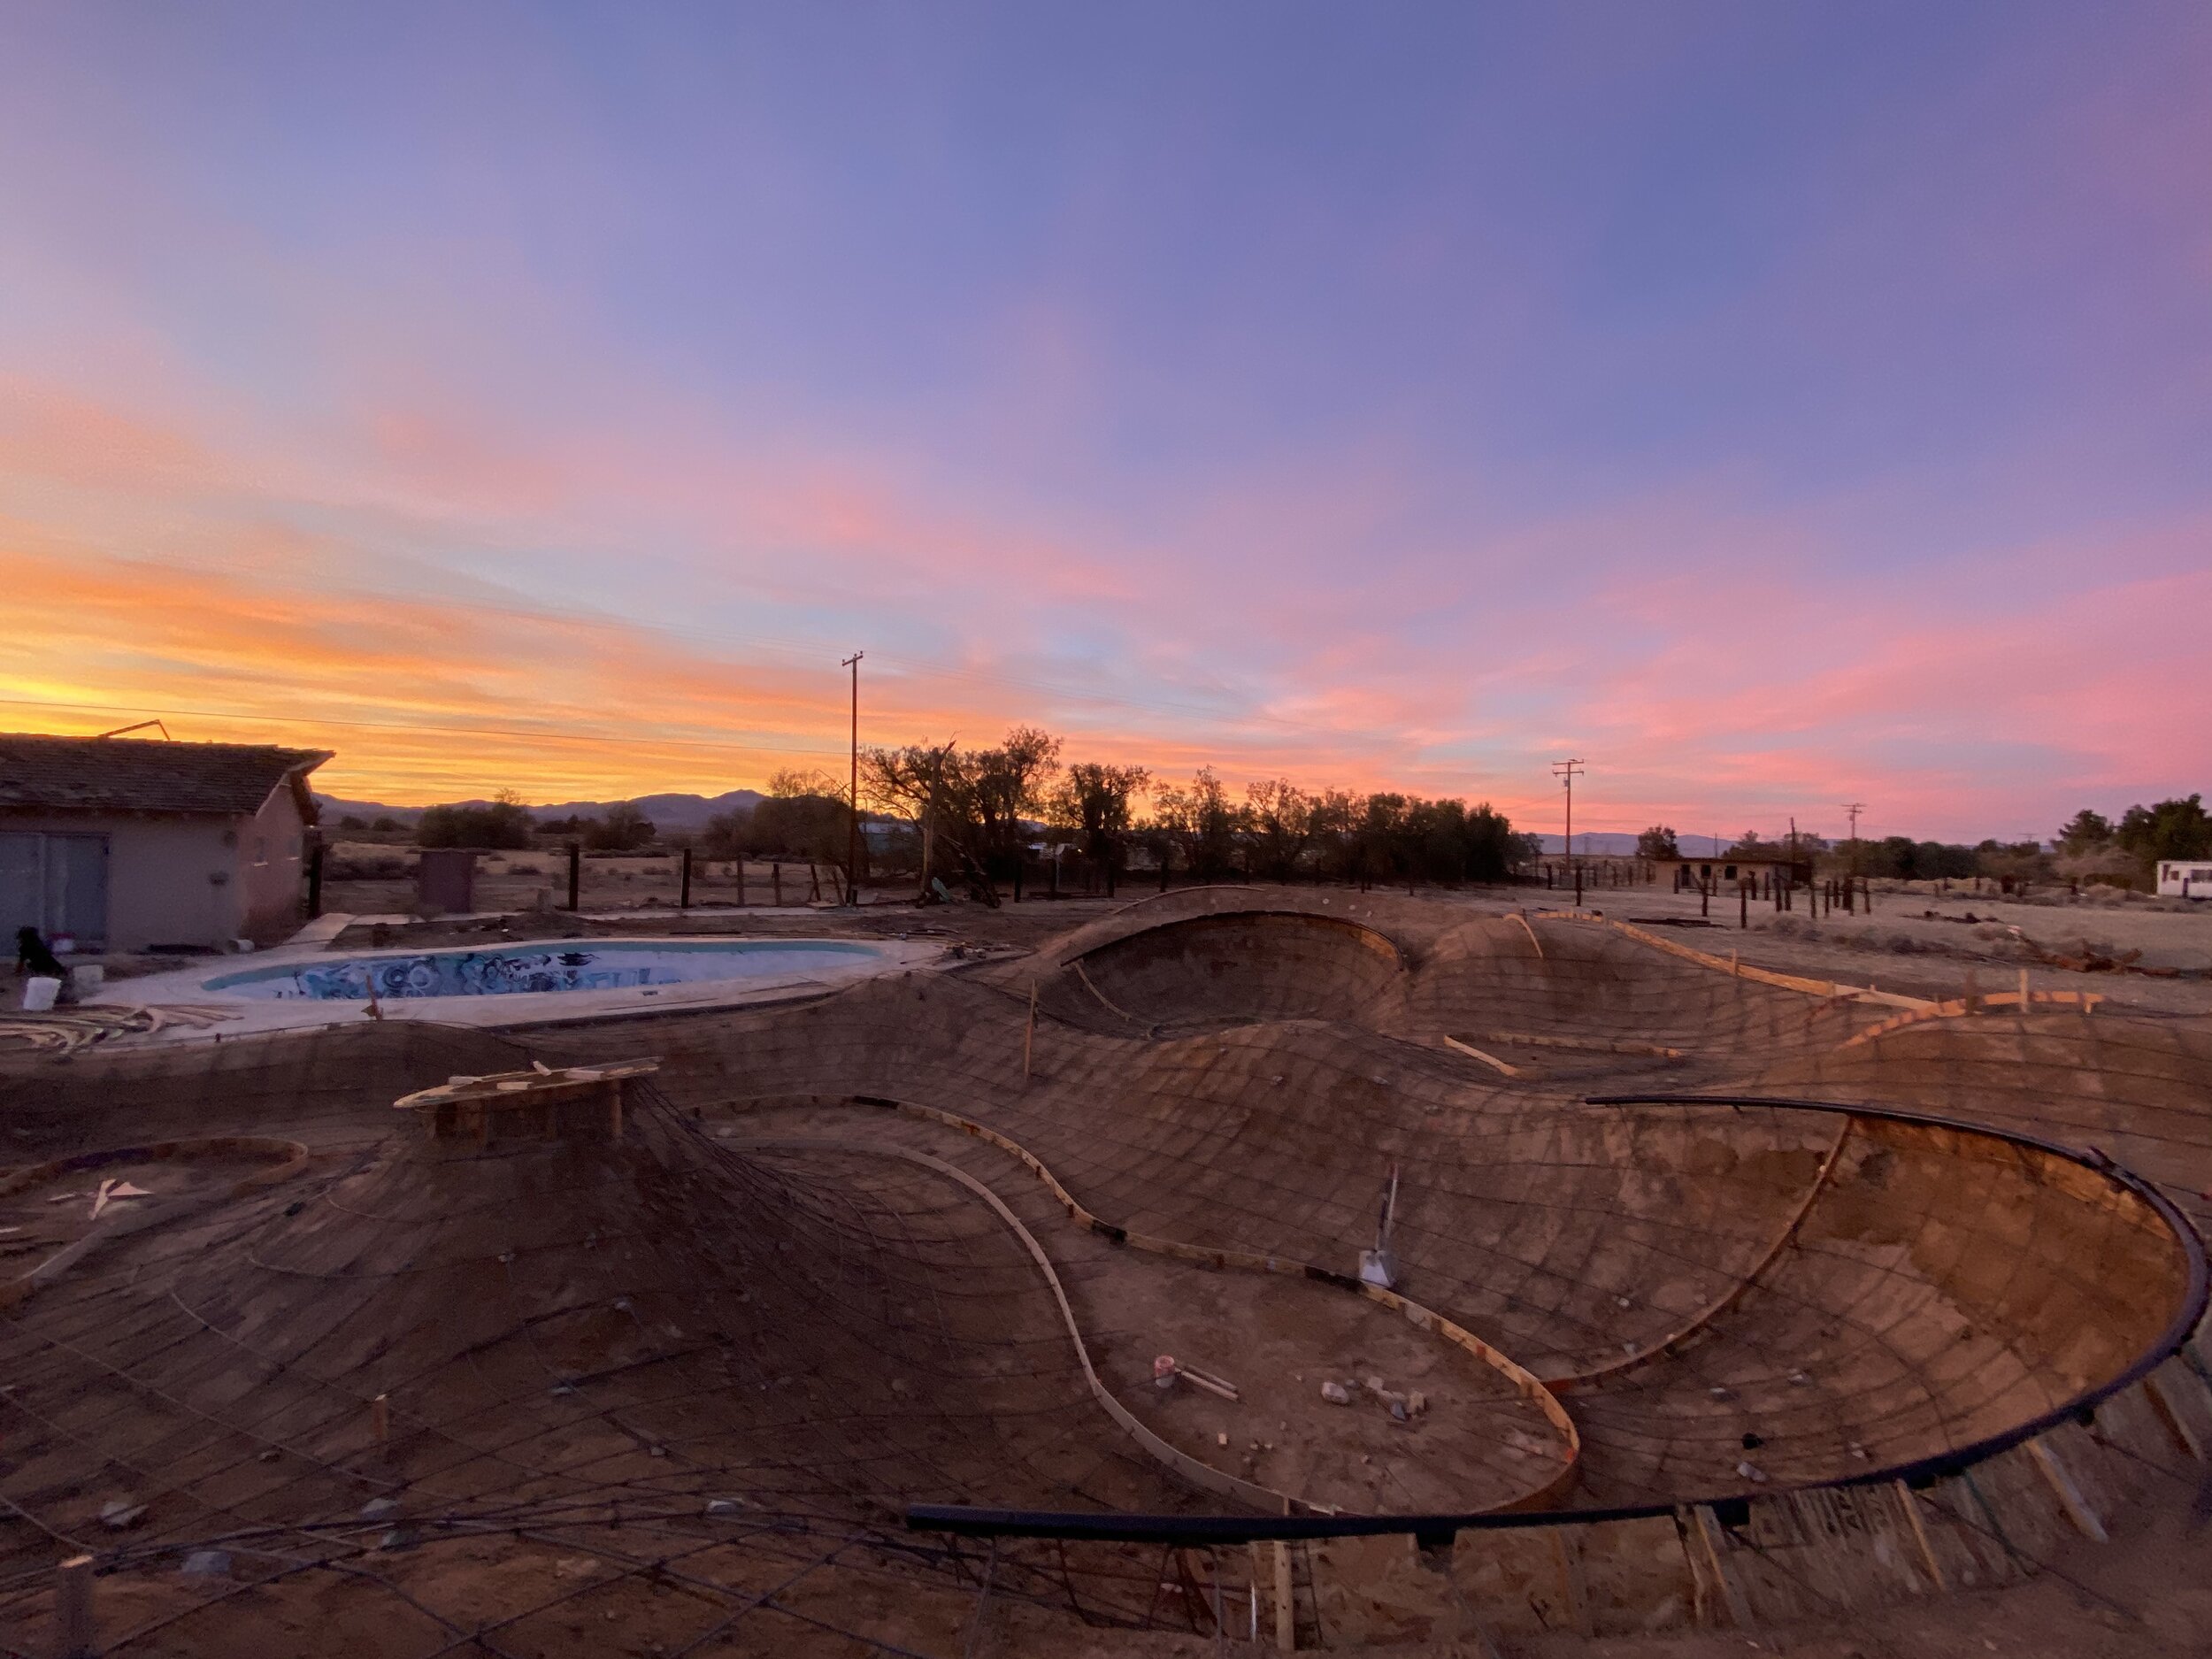 Desert 🌵 skating in the Mojave #desertskateinn #miniskatepark